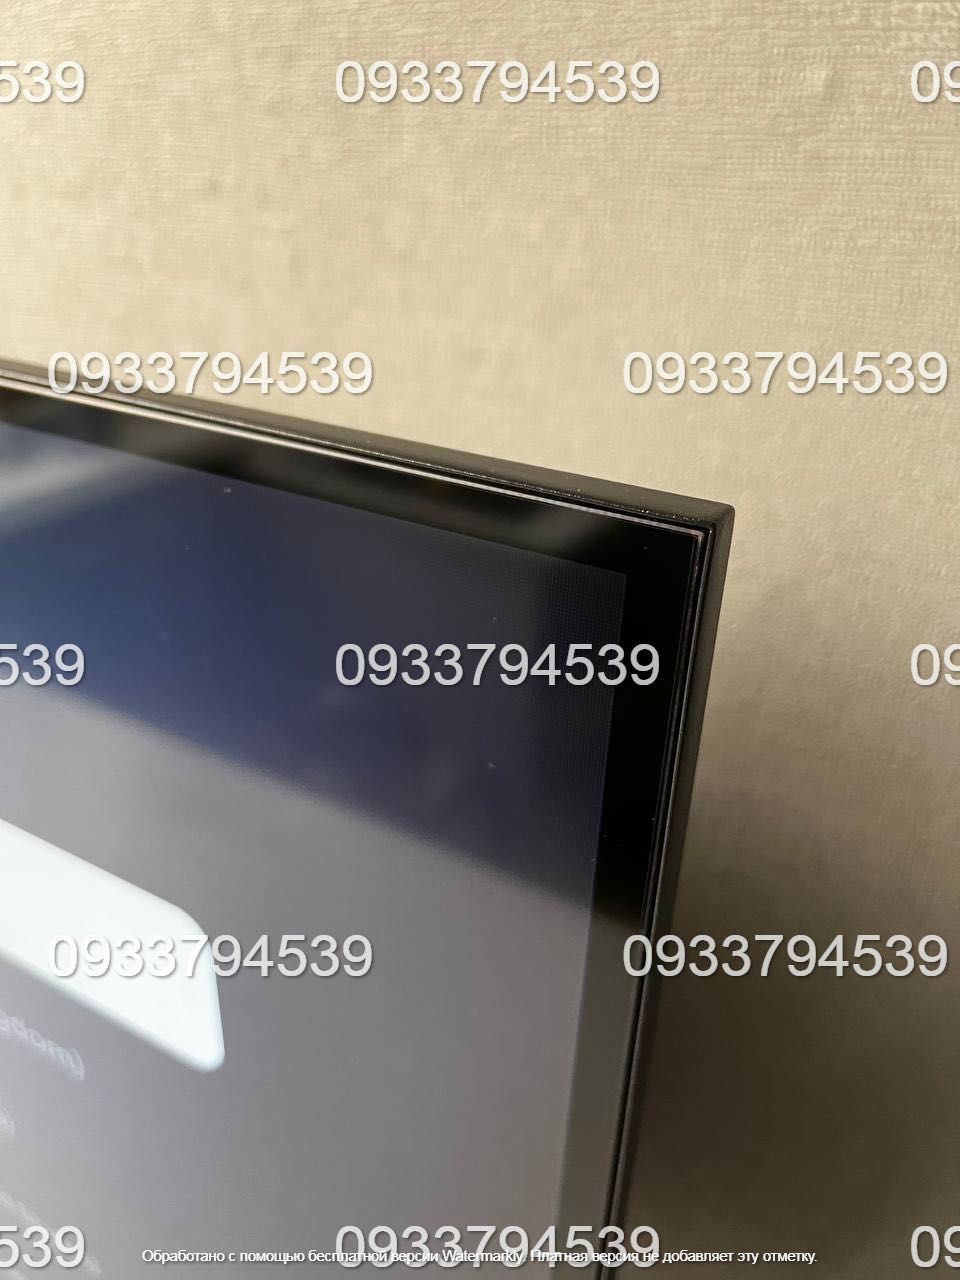 СУЧАСНИЙ! Телевізор 32 дюйми Samsung SMART TV з T2 Wi-Fi 4К IPS